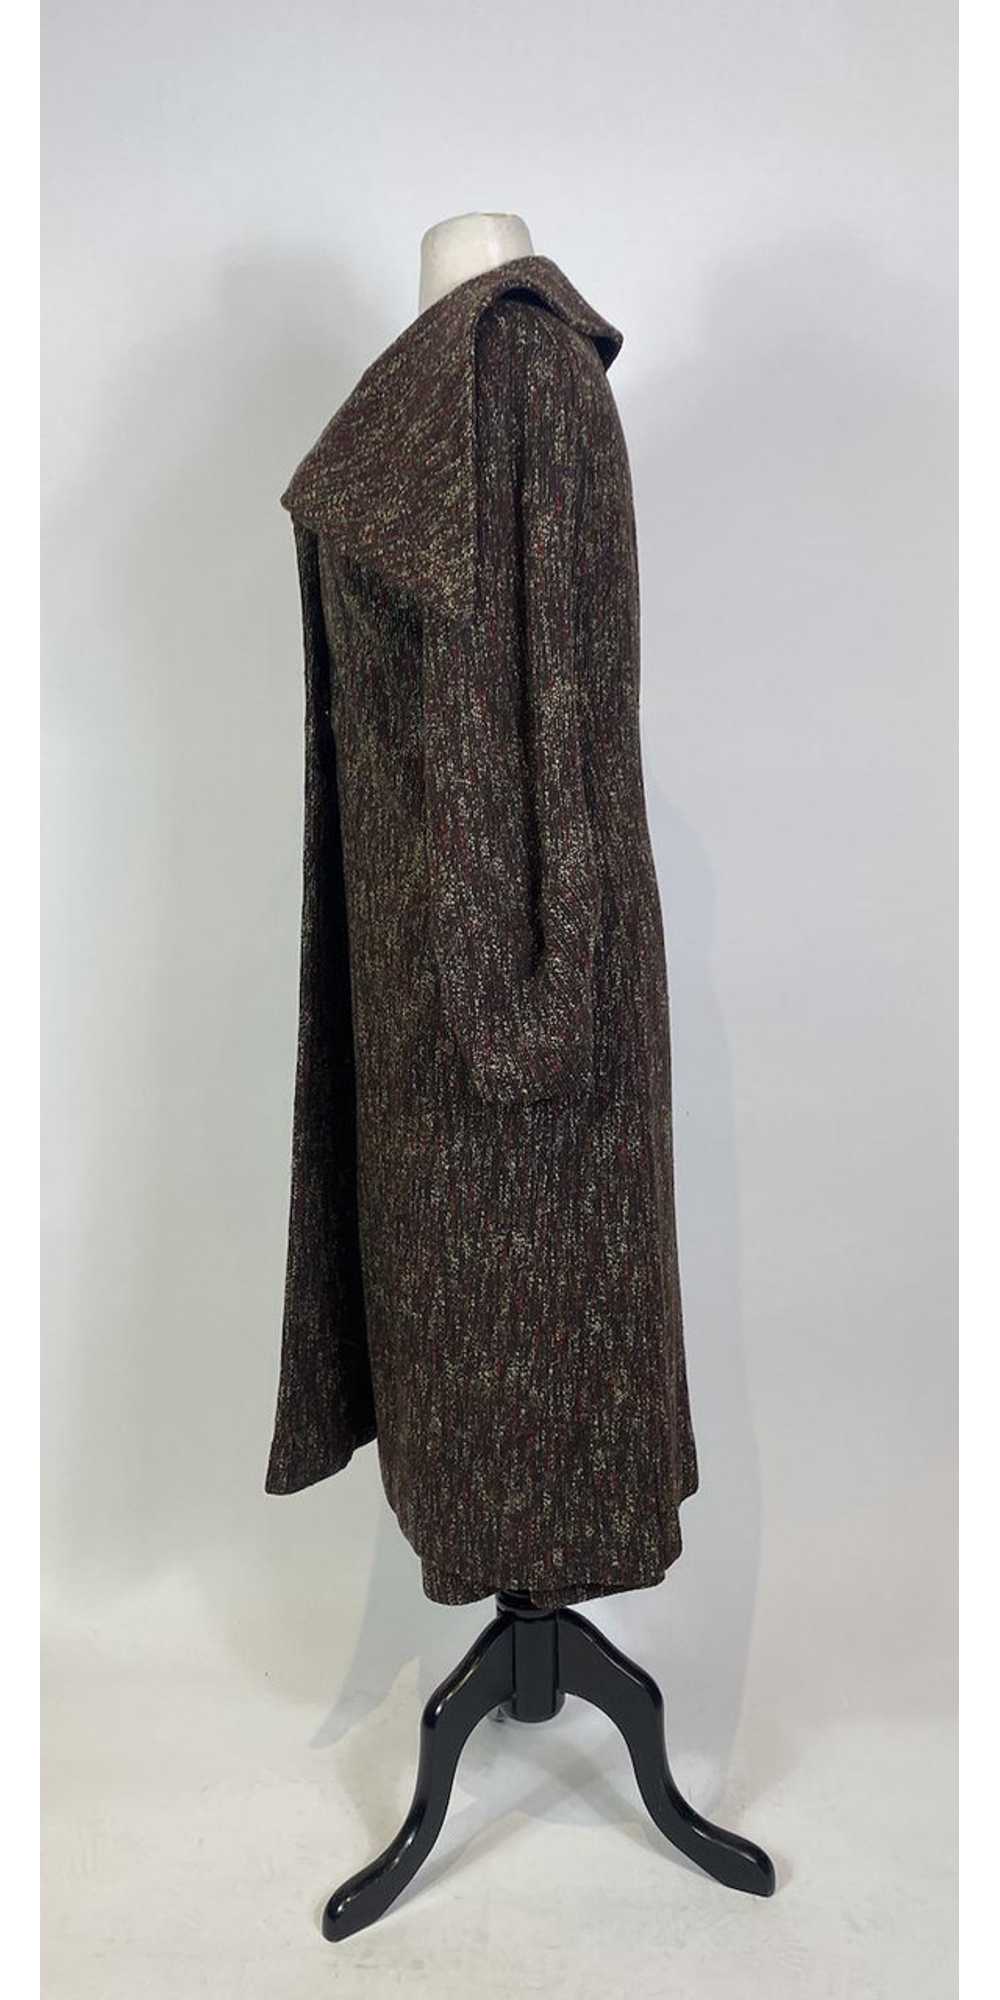 1920s Jumbo Collar Tweed Skirt and Jacket 2 pc. S… - image 3